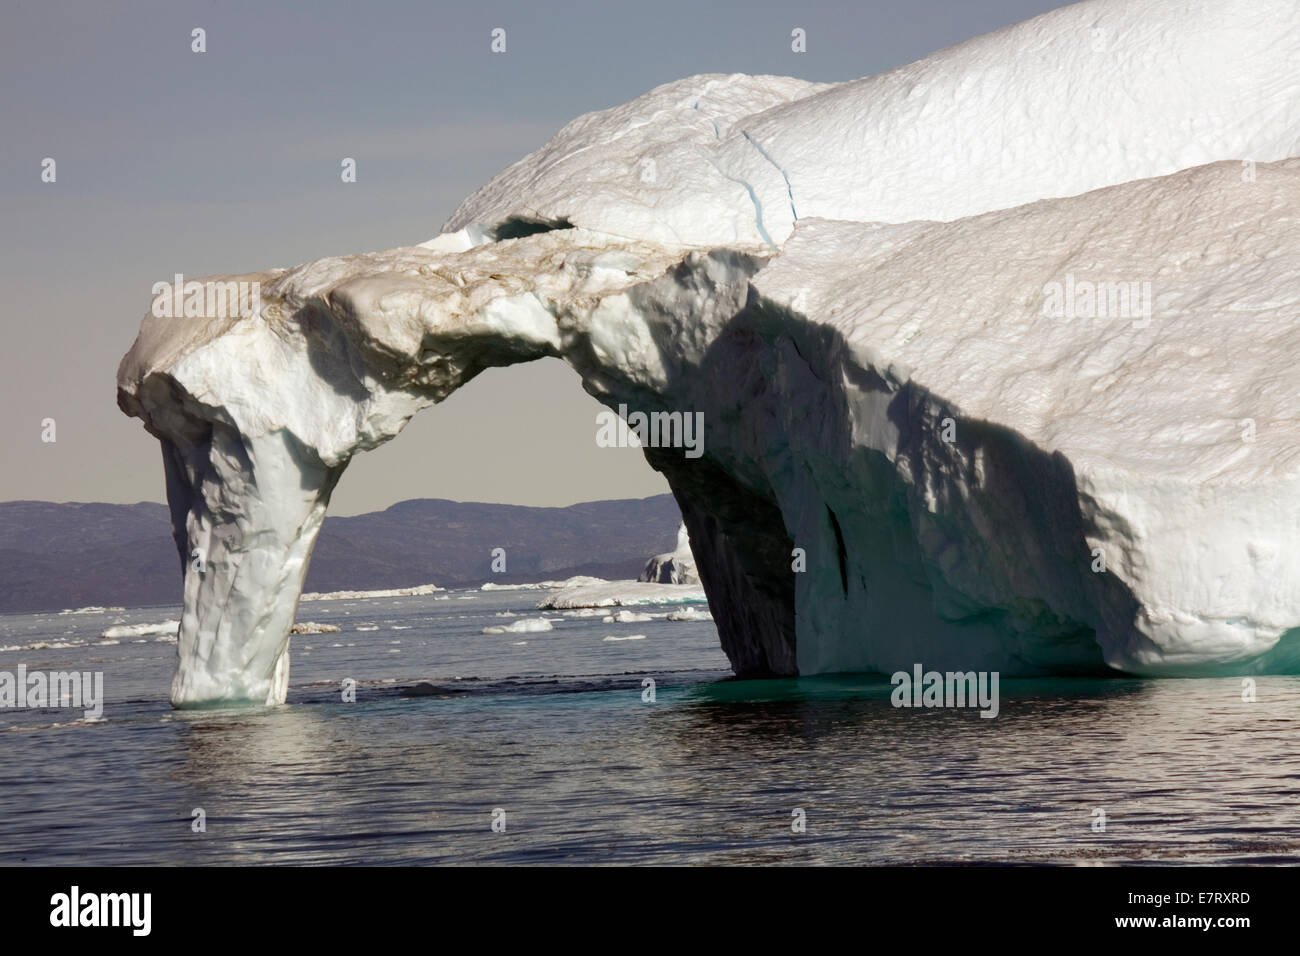 Un arco delicado de hielo se derrumba de un gigantesco iceberg desencajado del glaciar Sermeq Kujalleq (Glaciar Jacobshavn) Foto de stock